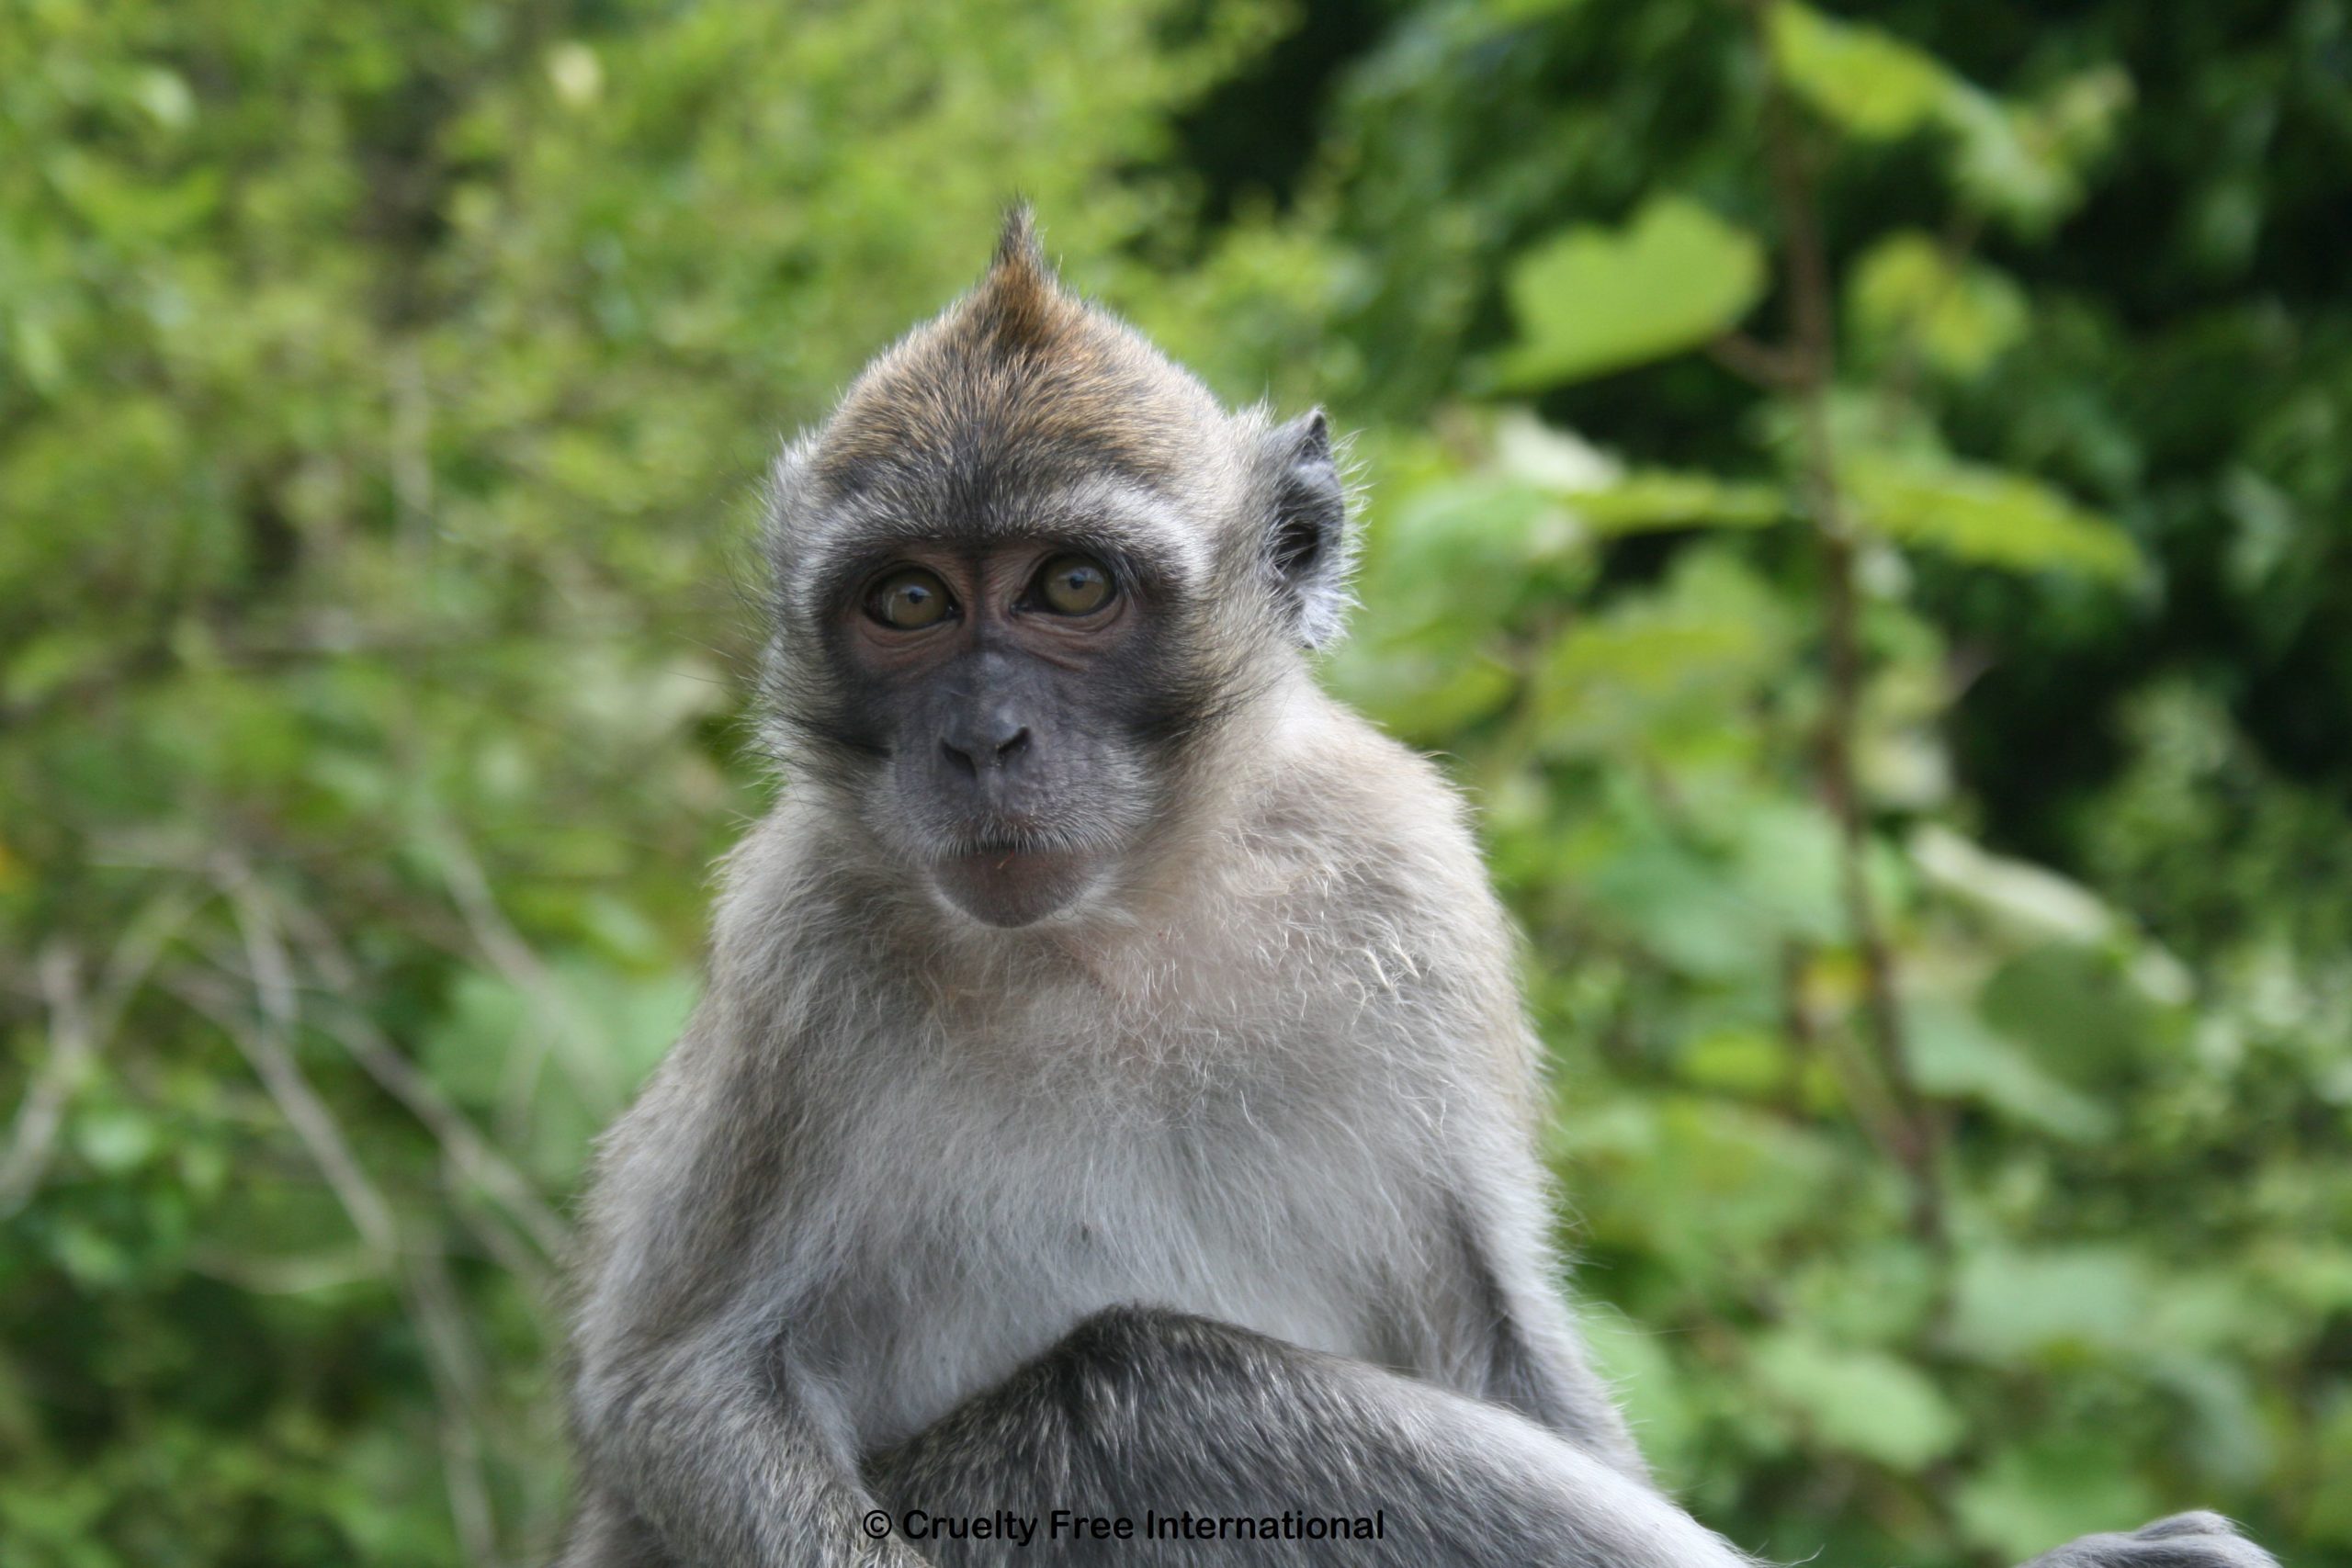 Semaine d’action pour mettre un terme au commerce mauricien de singes pour la recherche 